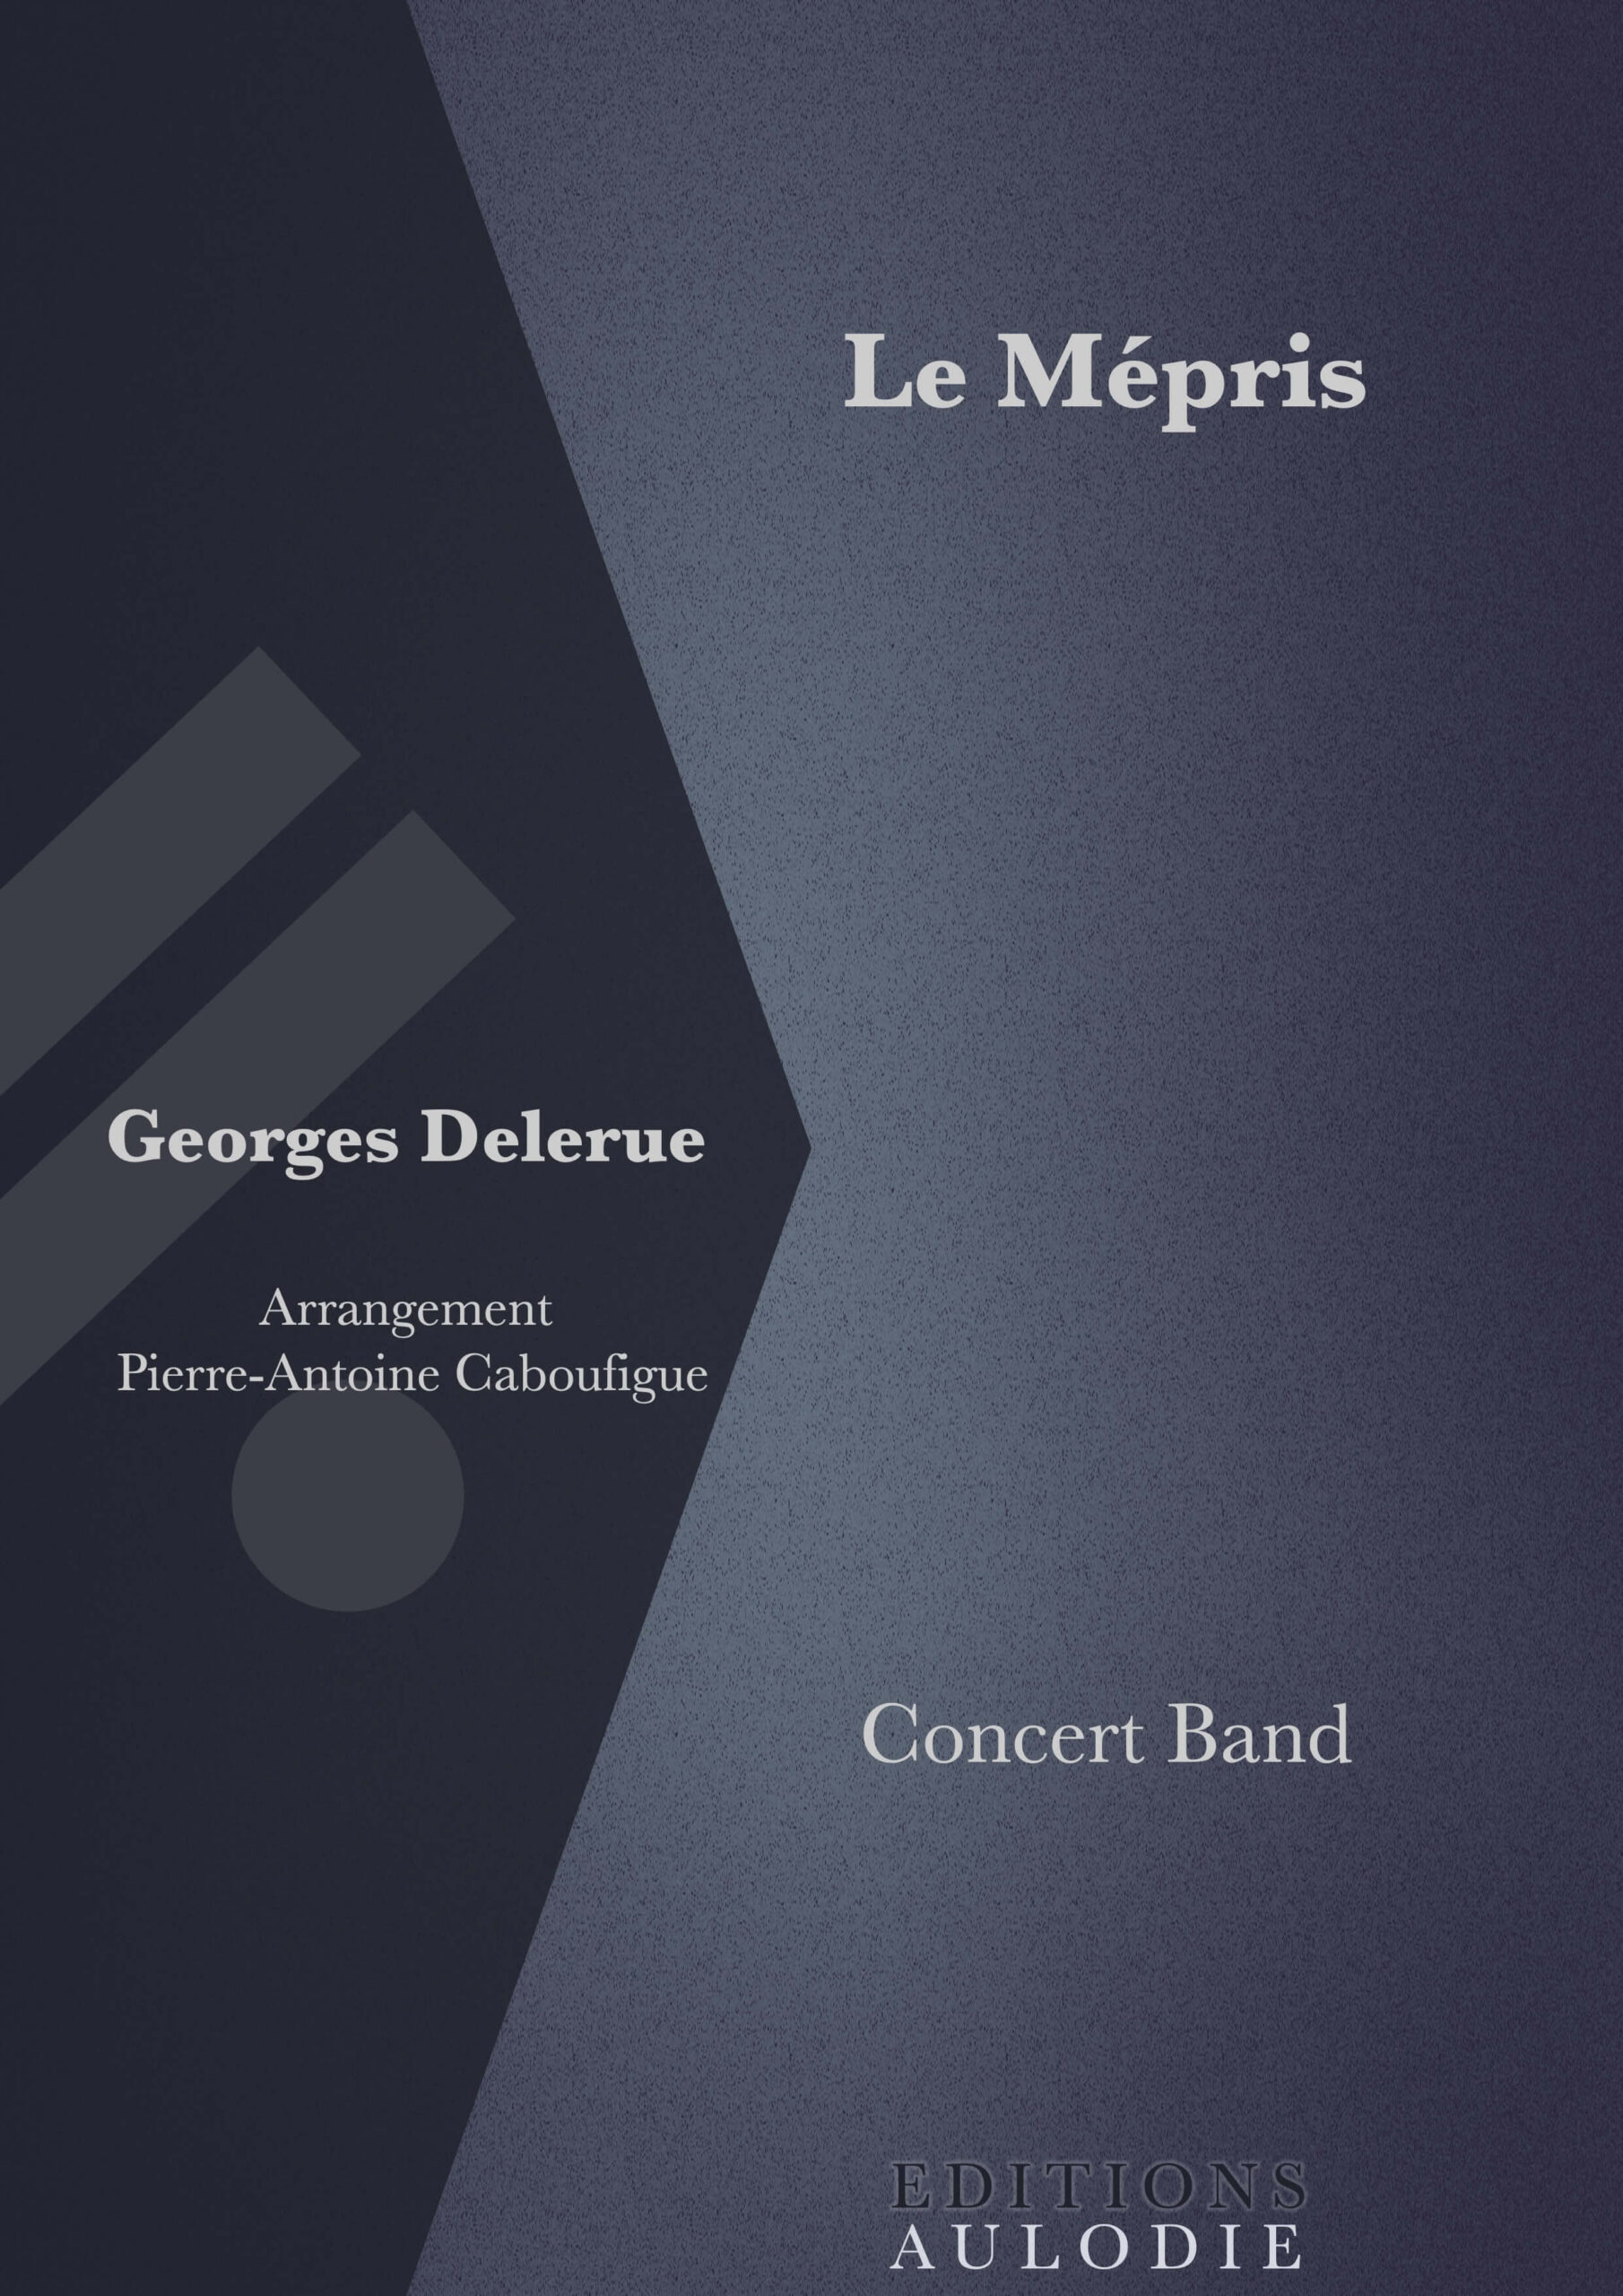 EA01016-Le_Mepris-Georges_Delerue-Concert_Band